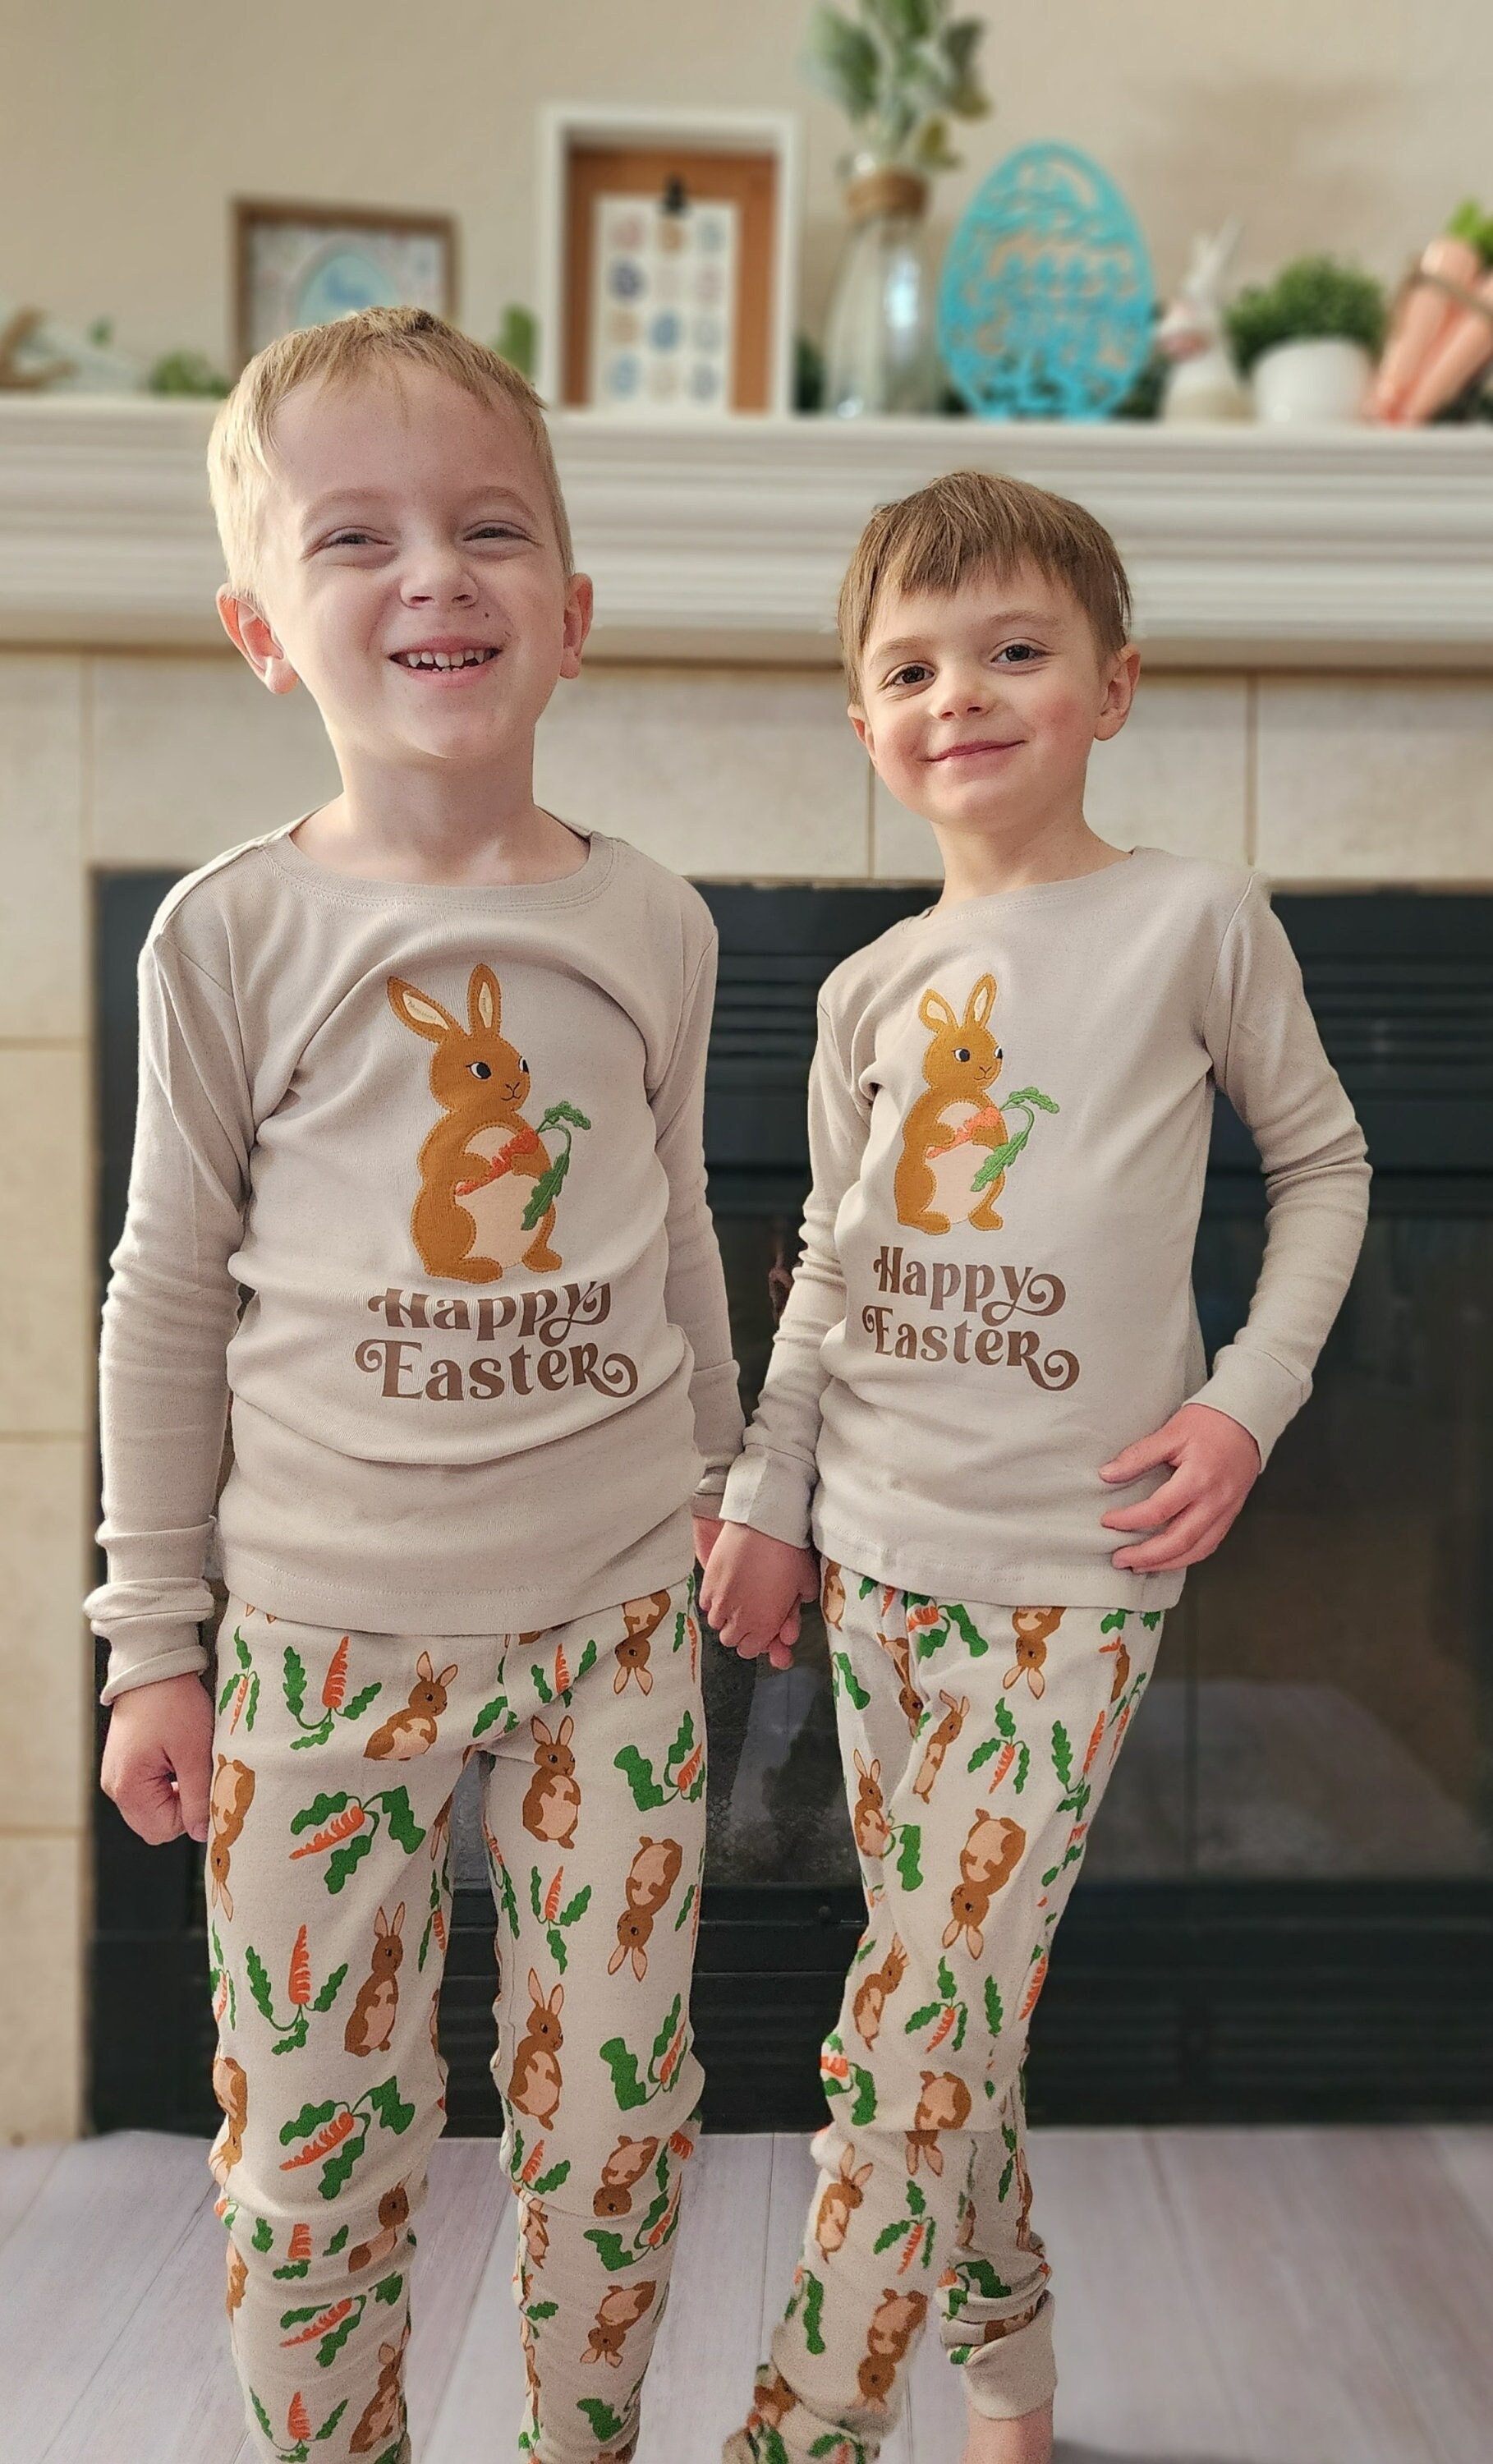 Pijamas de algodón ajustados con estampado de conejito de Pascua de manga  larga familiares a juego para bebés y niños pequeños